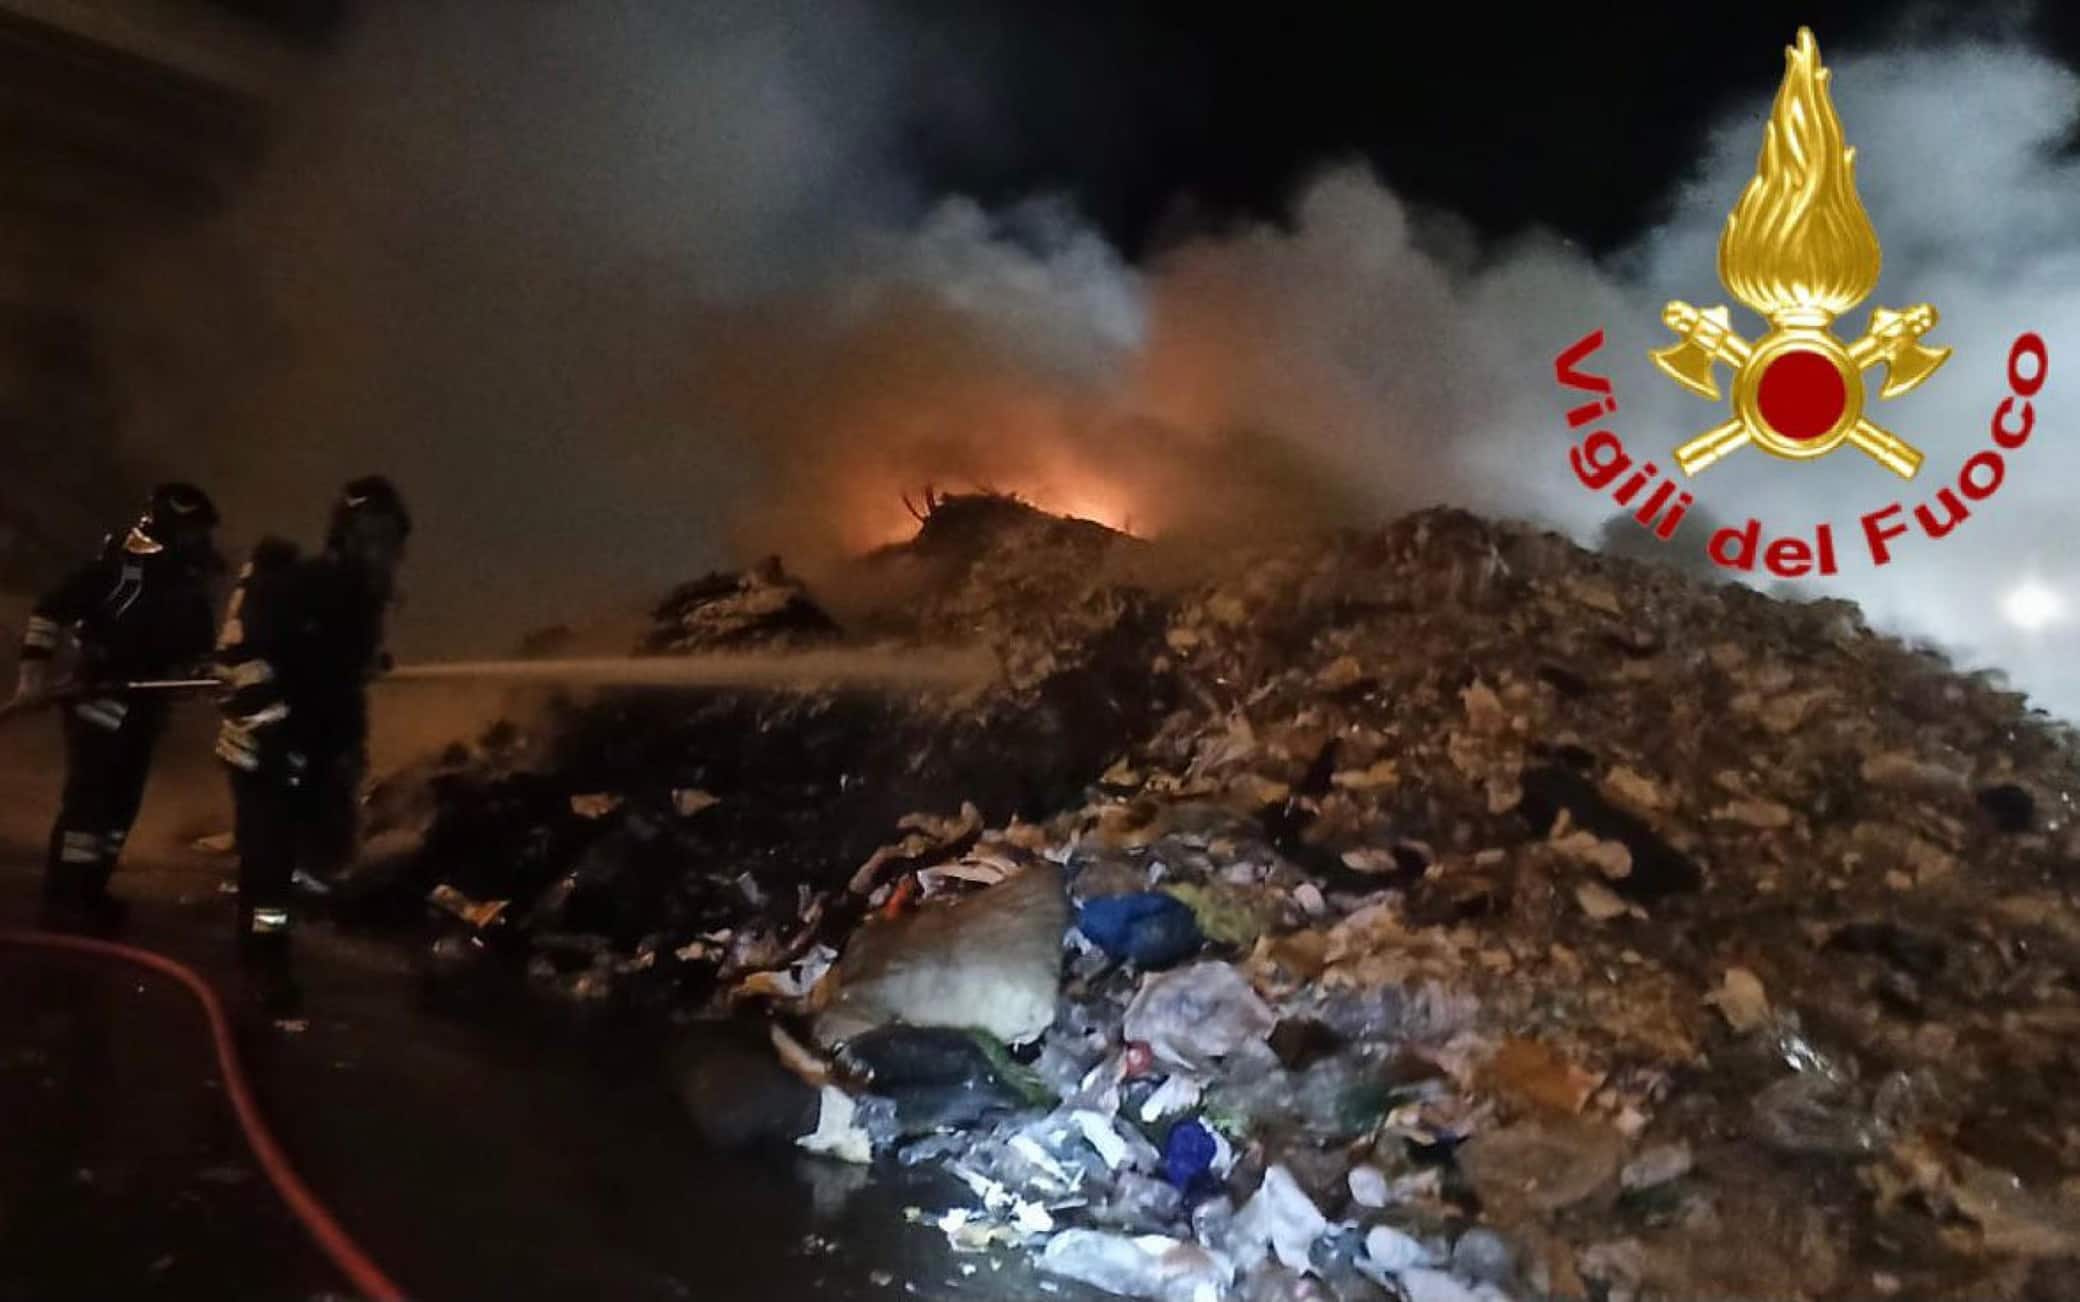 L'incendio nell'impianto di rifiuti a Fombio, Lodi